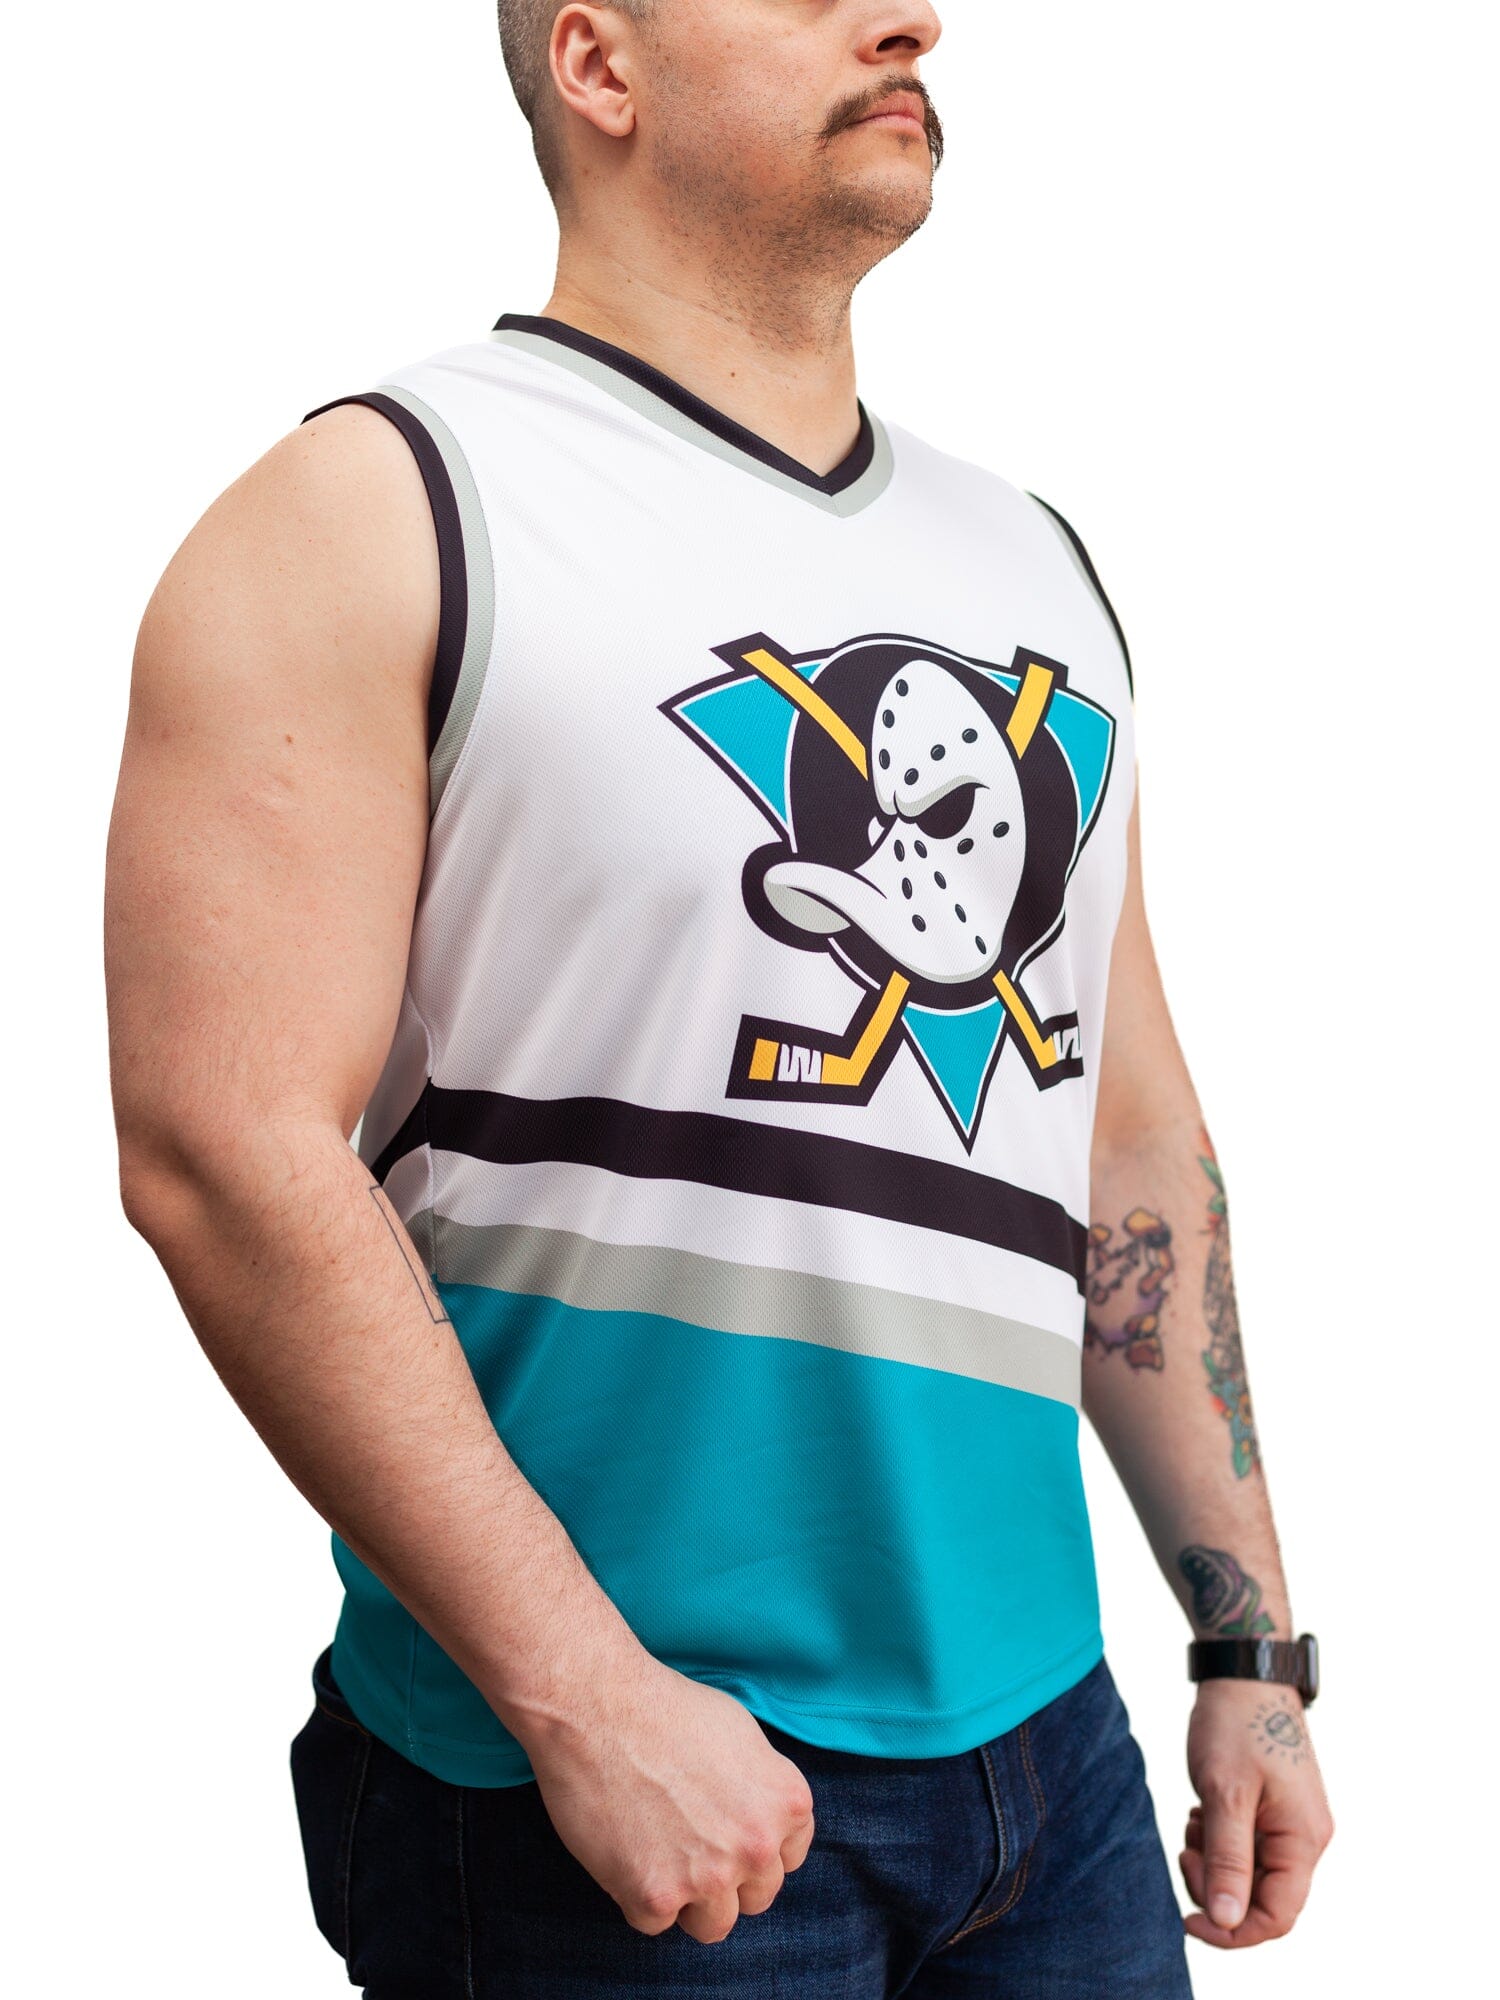 My Anaheim Ducks home jersey concept : r/AnaheimDucks